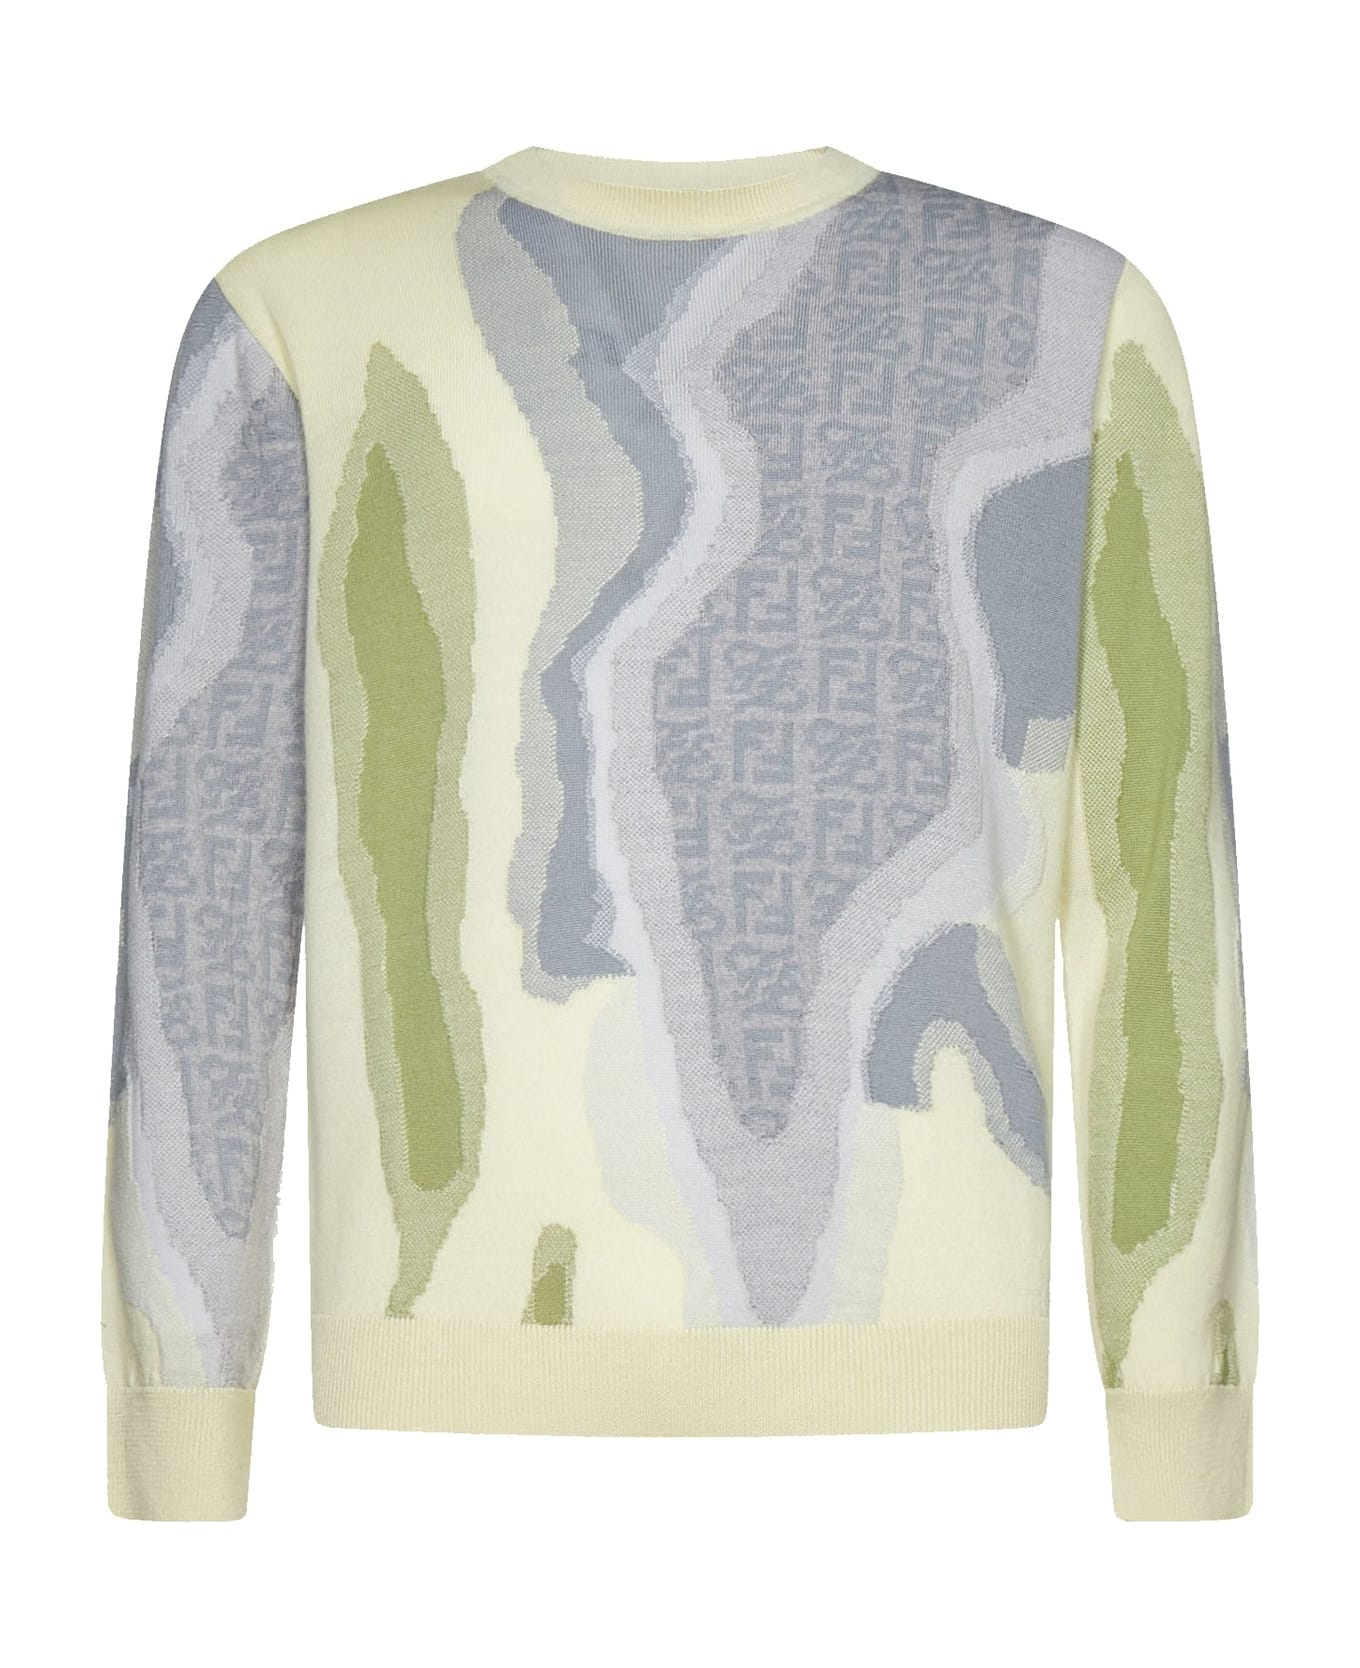 Fendi Earth Sweater - Green ニットウェア